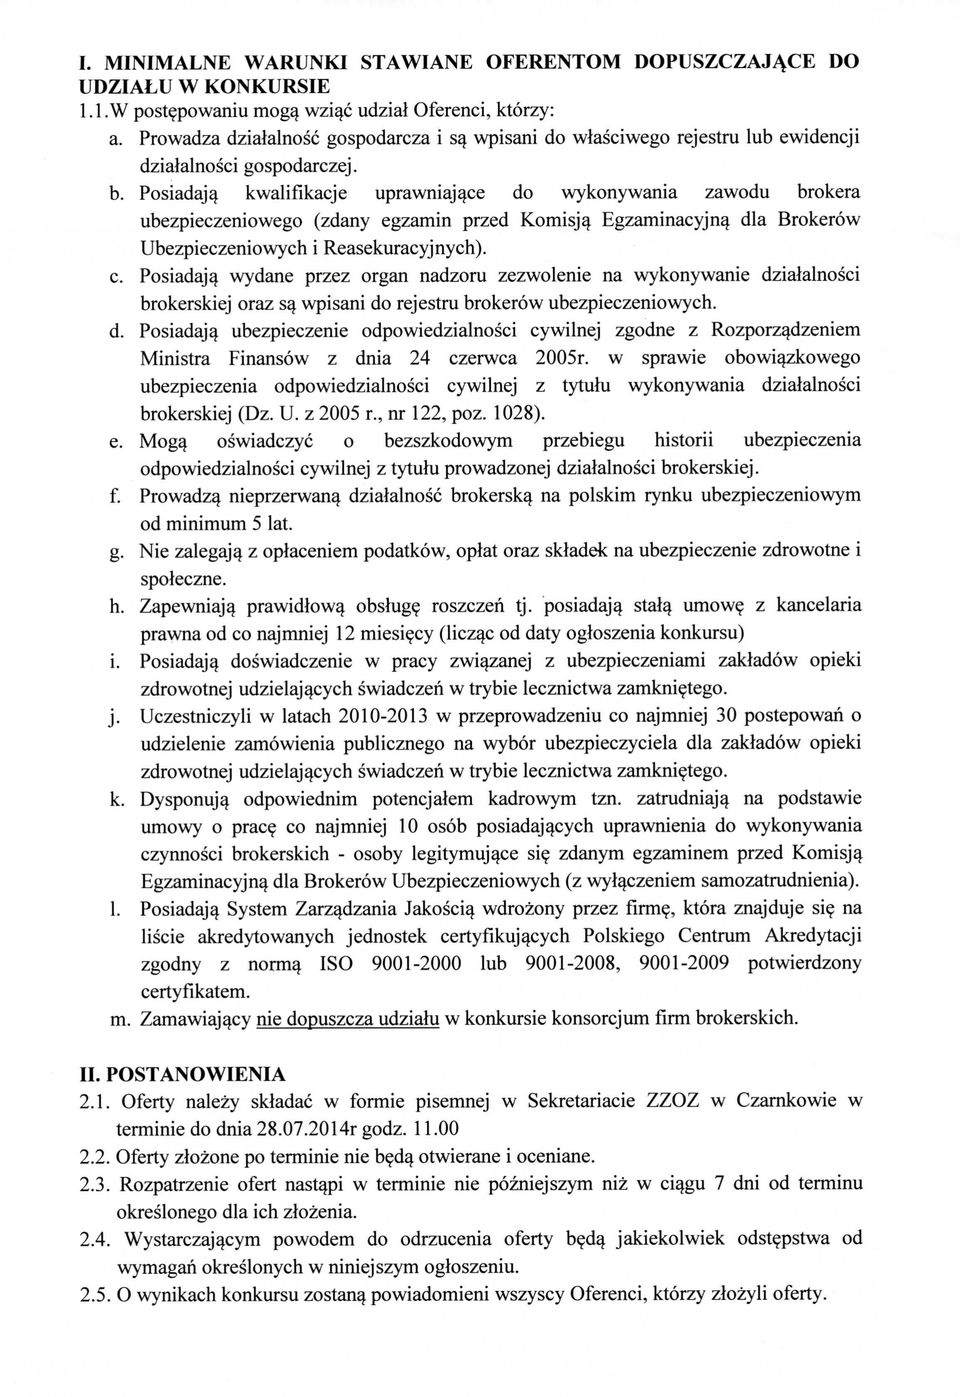 Posiadaja^ kwalifikacje uprawniajace do wykonywania zawodu brokera ubezpieczeniowego (zdany egzamin przed Komisja^ Egzaminacyjna^ dla Brokerow Ubezpieczeniowych i Reasekuracyjnych). c.